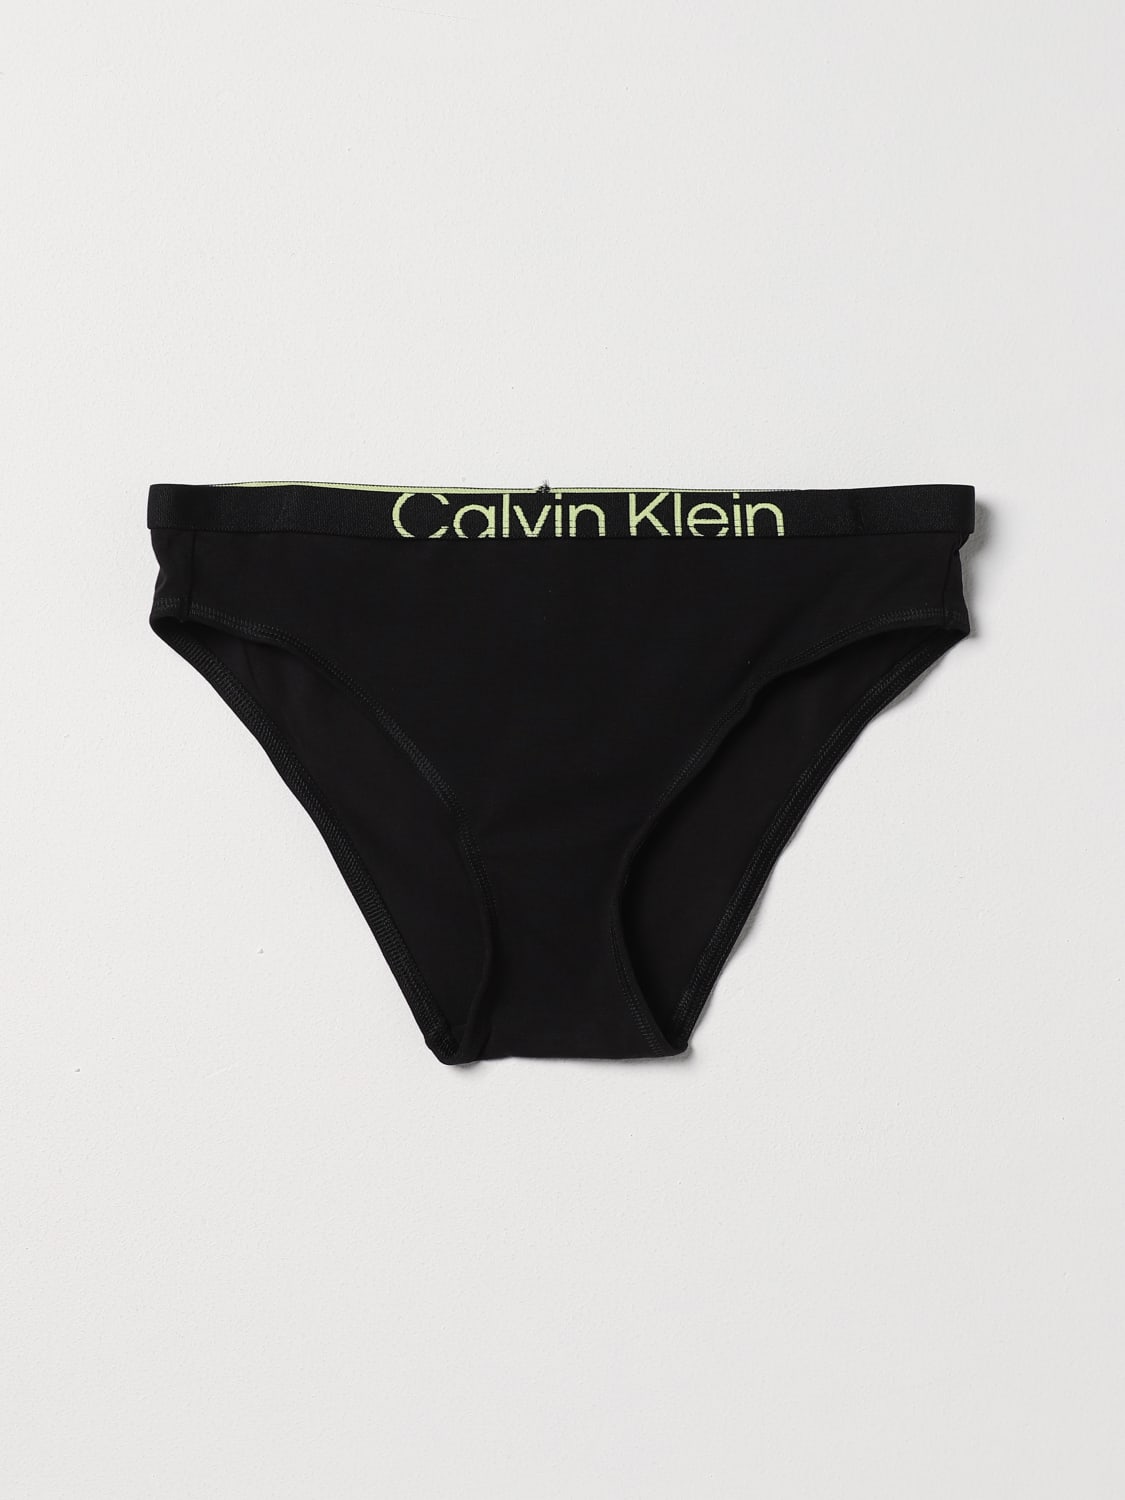 CALVIN KLEIN UNDERWEAR: Dessous damen Ck Underwear - Schwarz  CALVIN KLEIN  UNDERWEAR Dessous 000QF7403E online auf